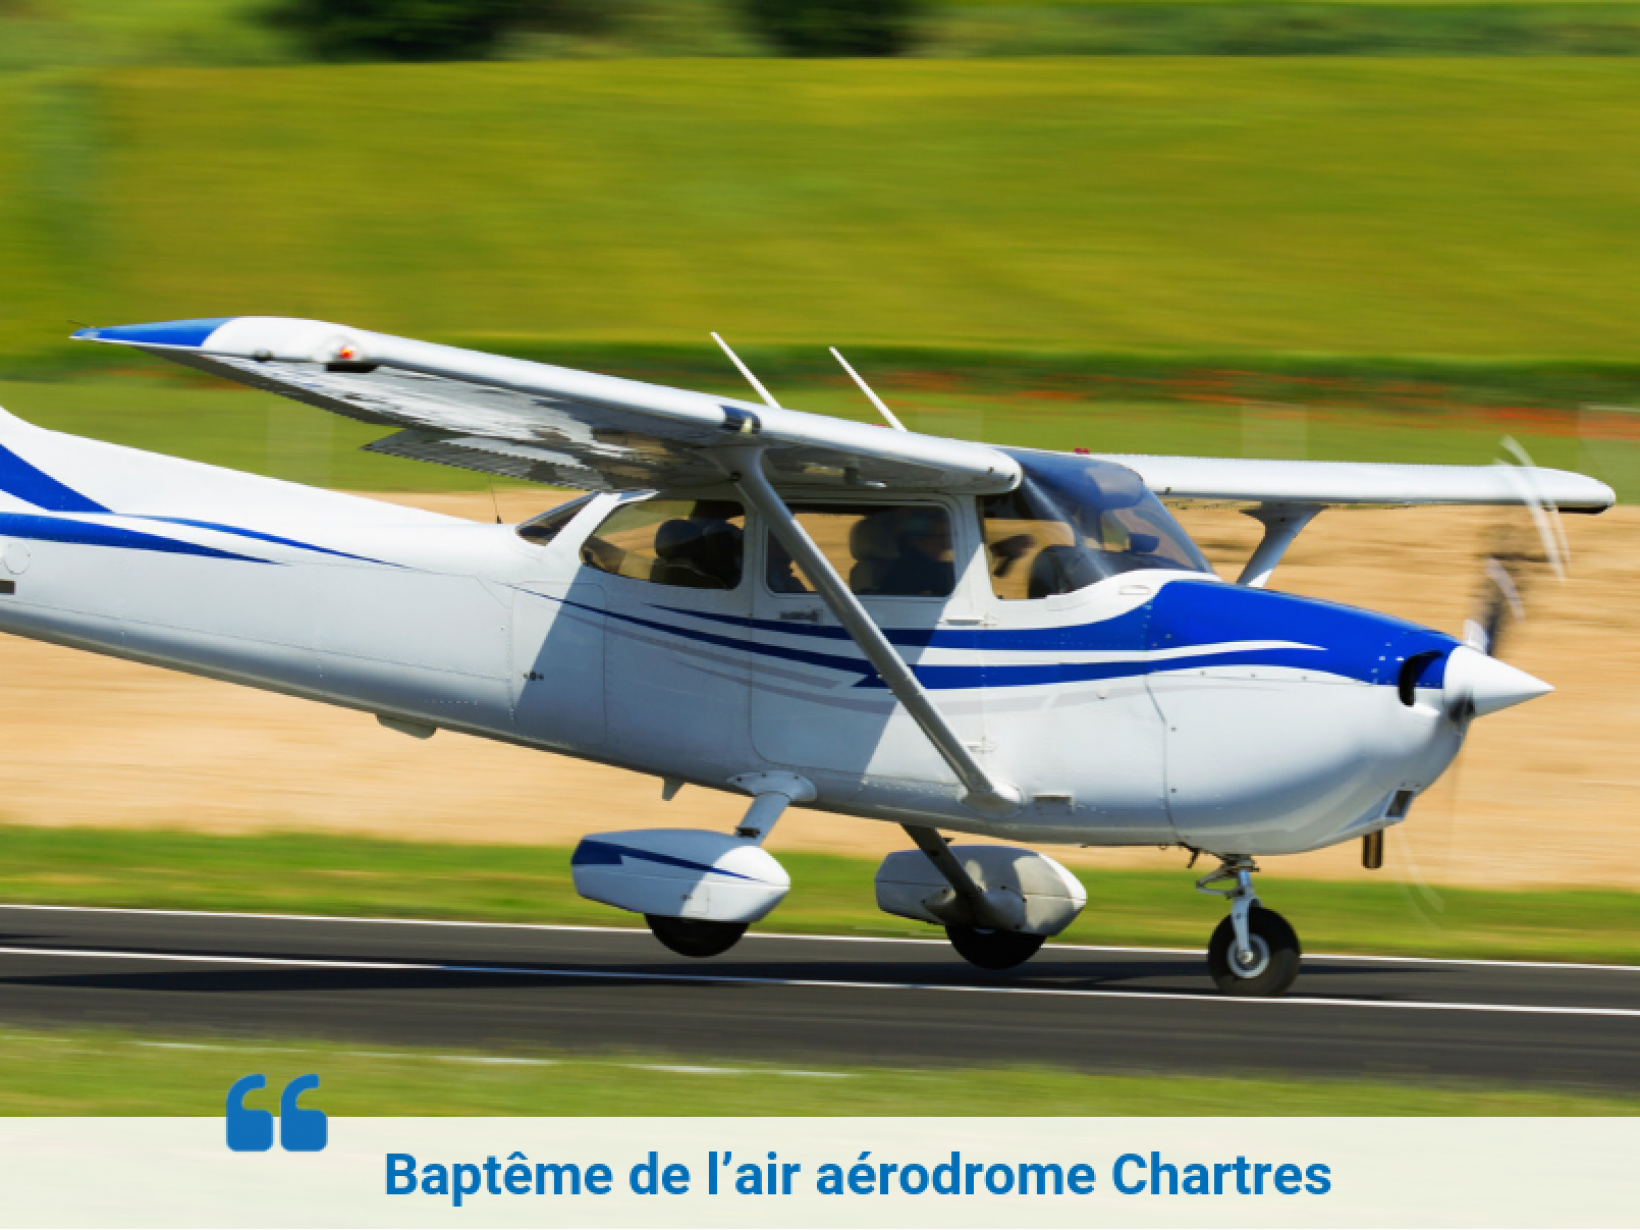 Baptême de l’air aérodrome Chartres